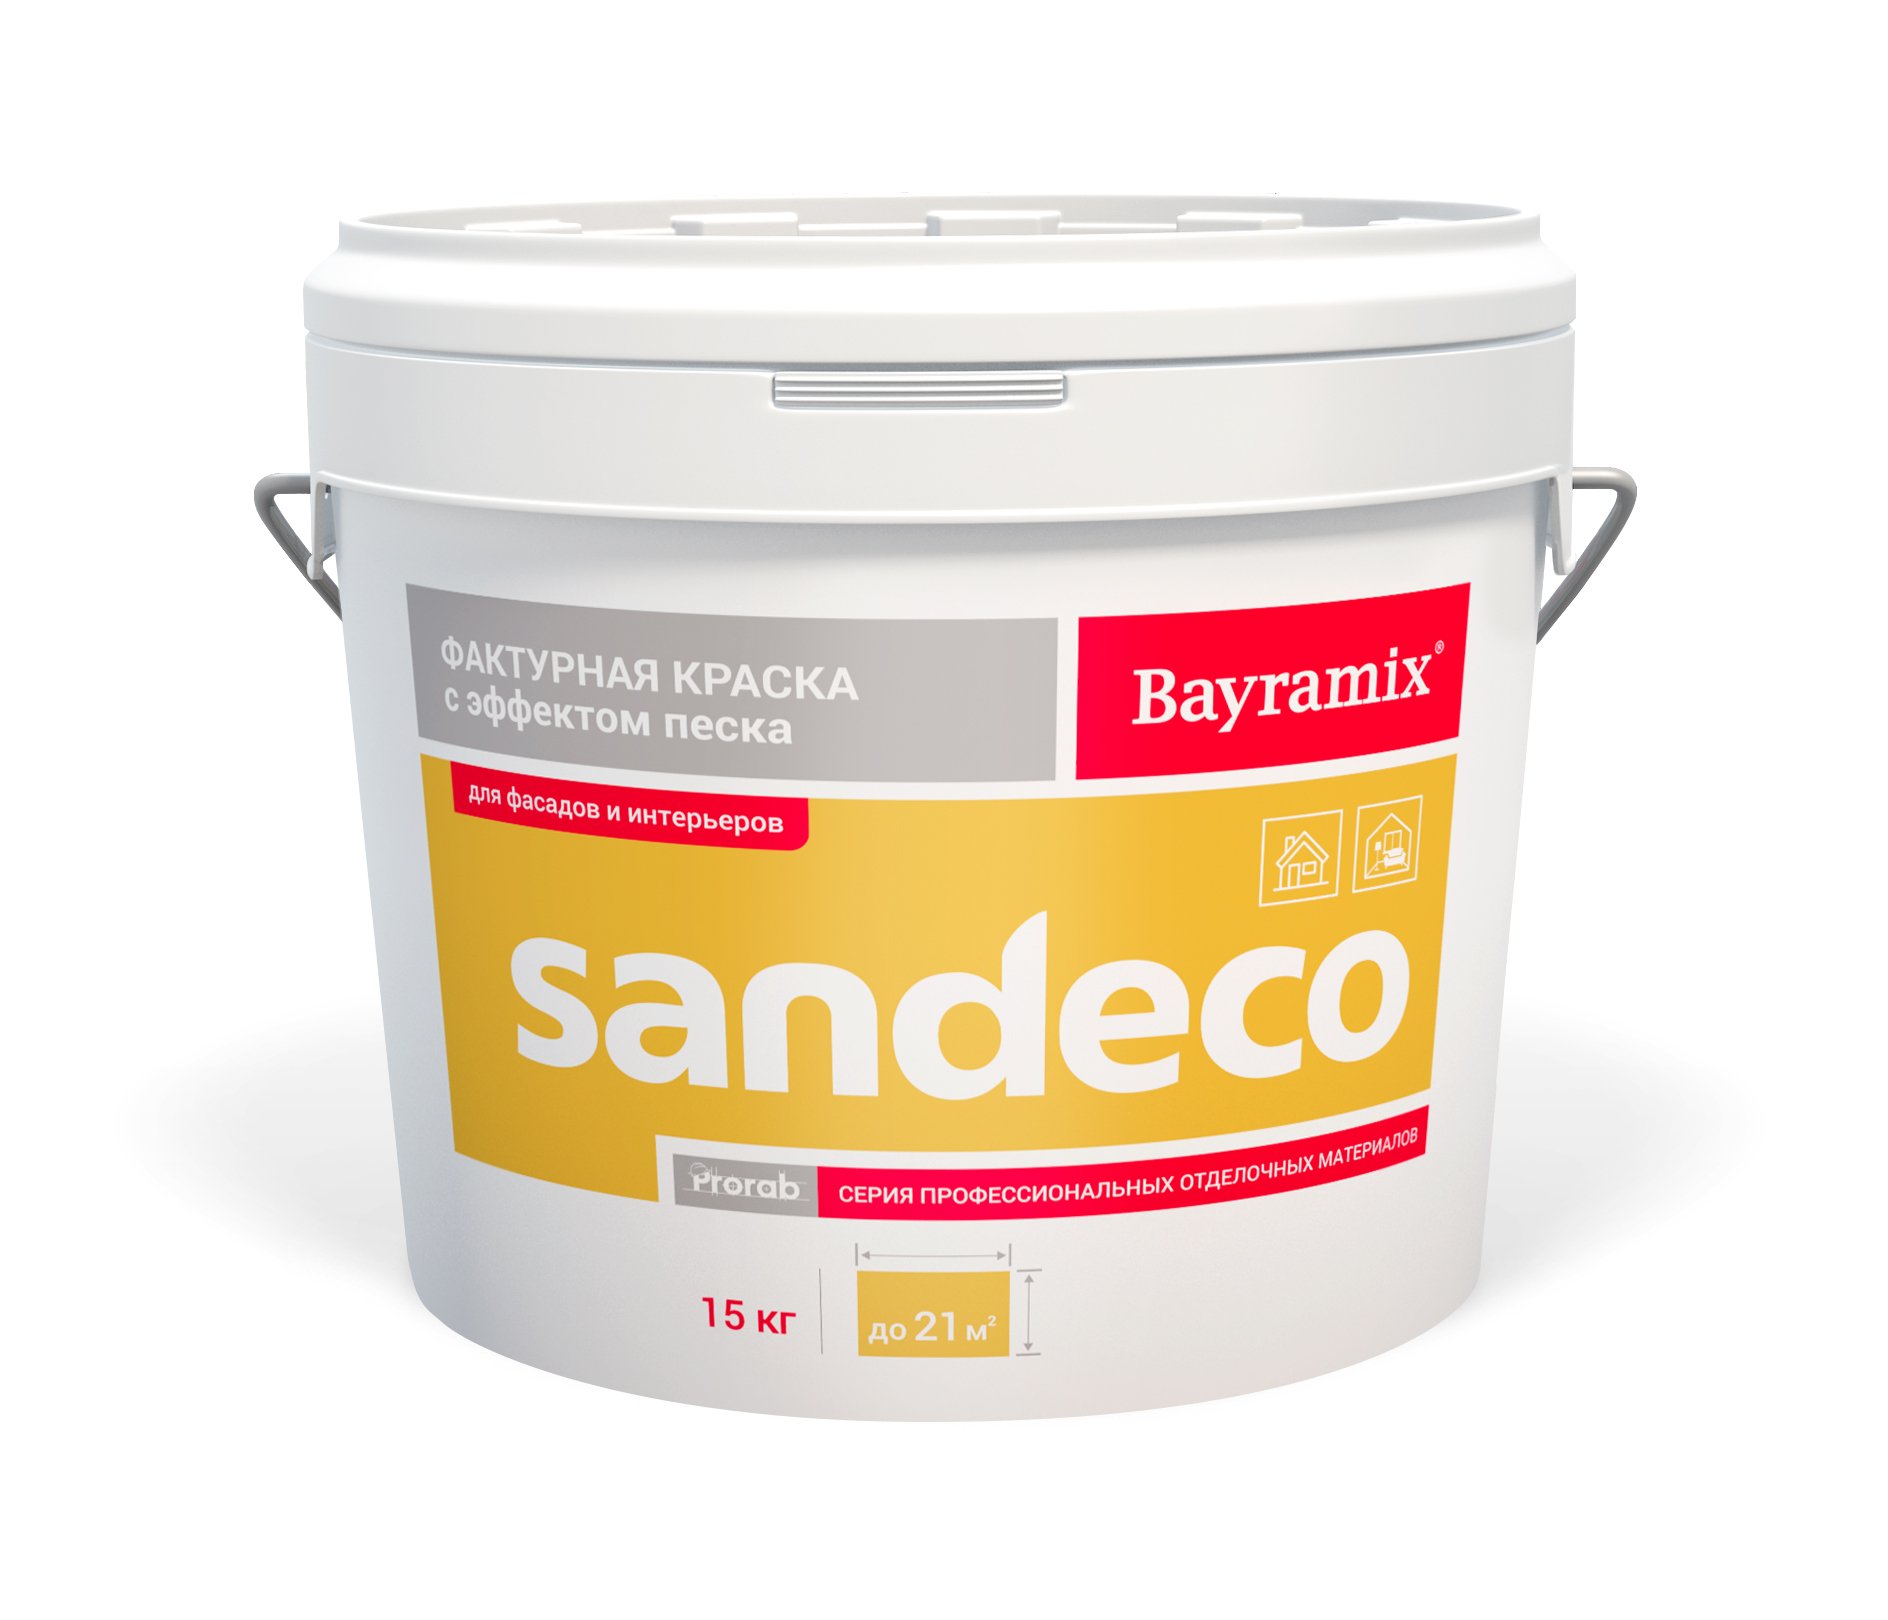 Фактурная краска Bayramix Sandeco для наружных и внутренних работ, 15 кг термостойкий лак для внутренних работ pinotex